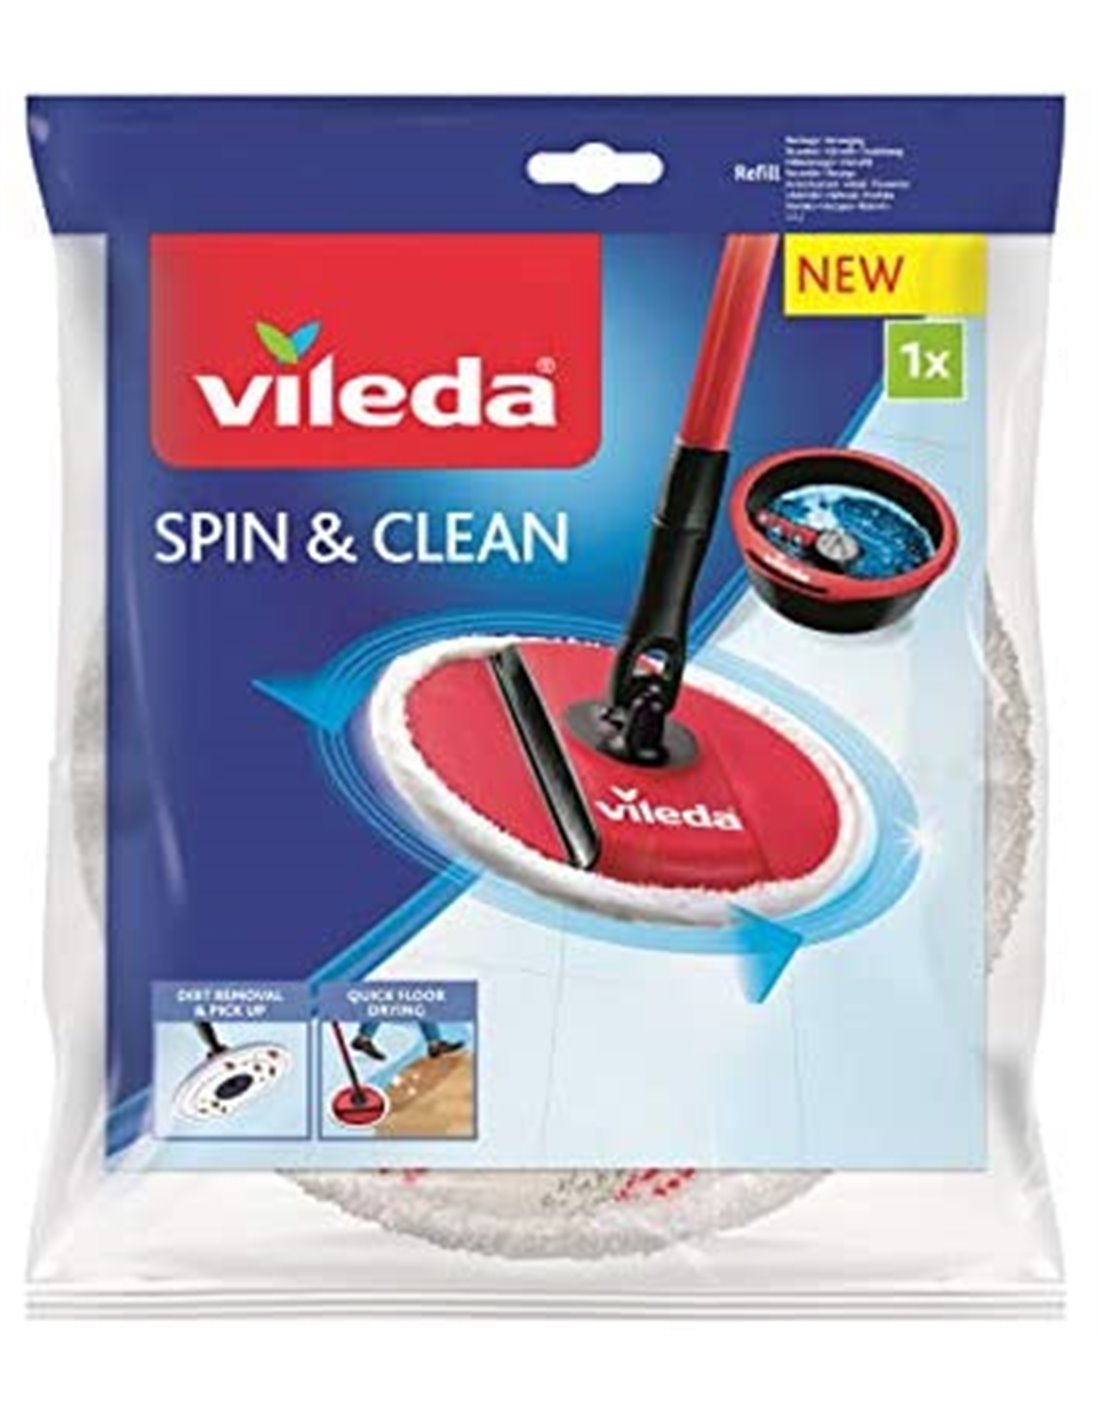 https://tuttocasa.eu/3979-thickbox_default/vileda-spin-clean-ricambio-spinmop-lavapavimenti-bianco-1-unita-confezione-da-1.jpg